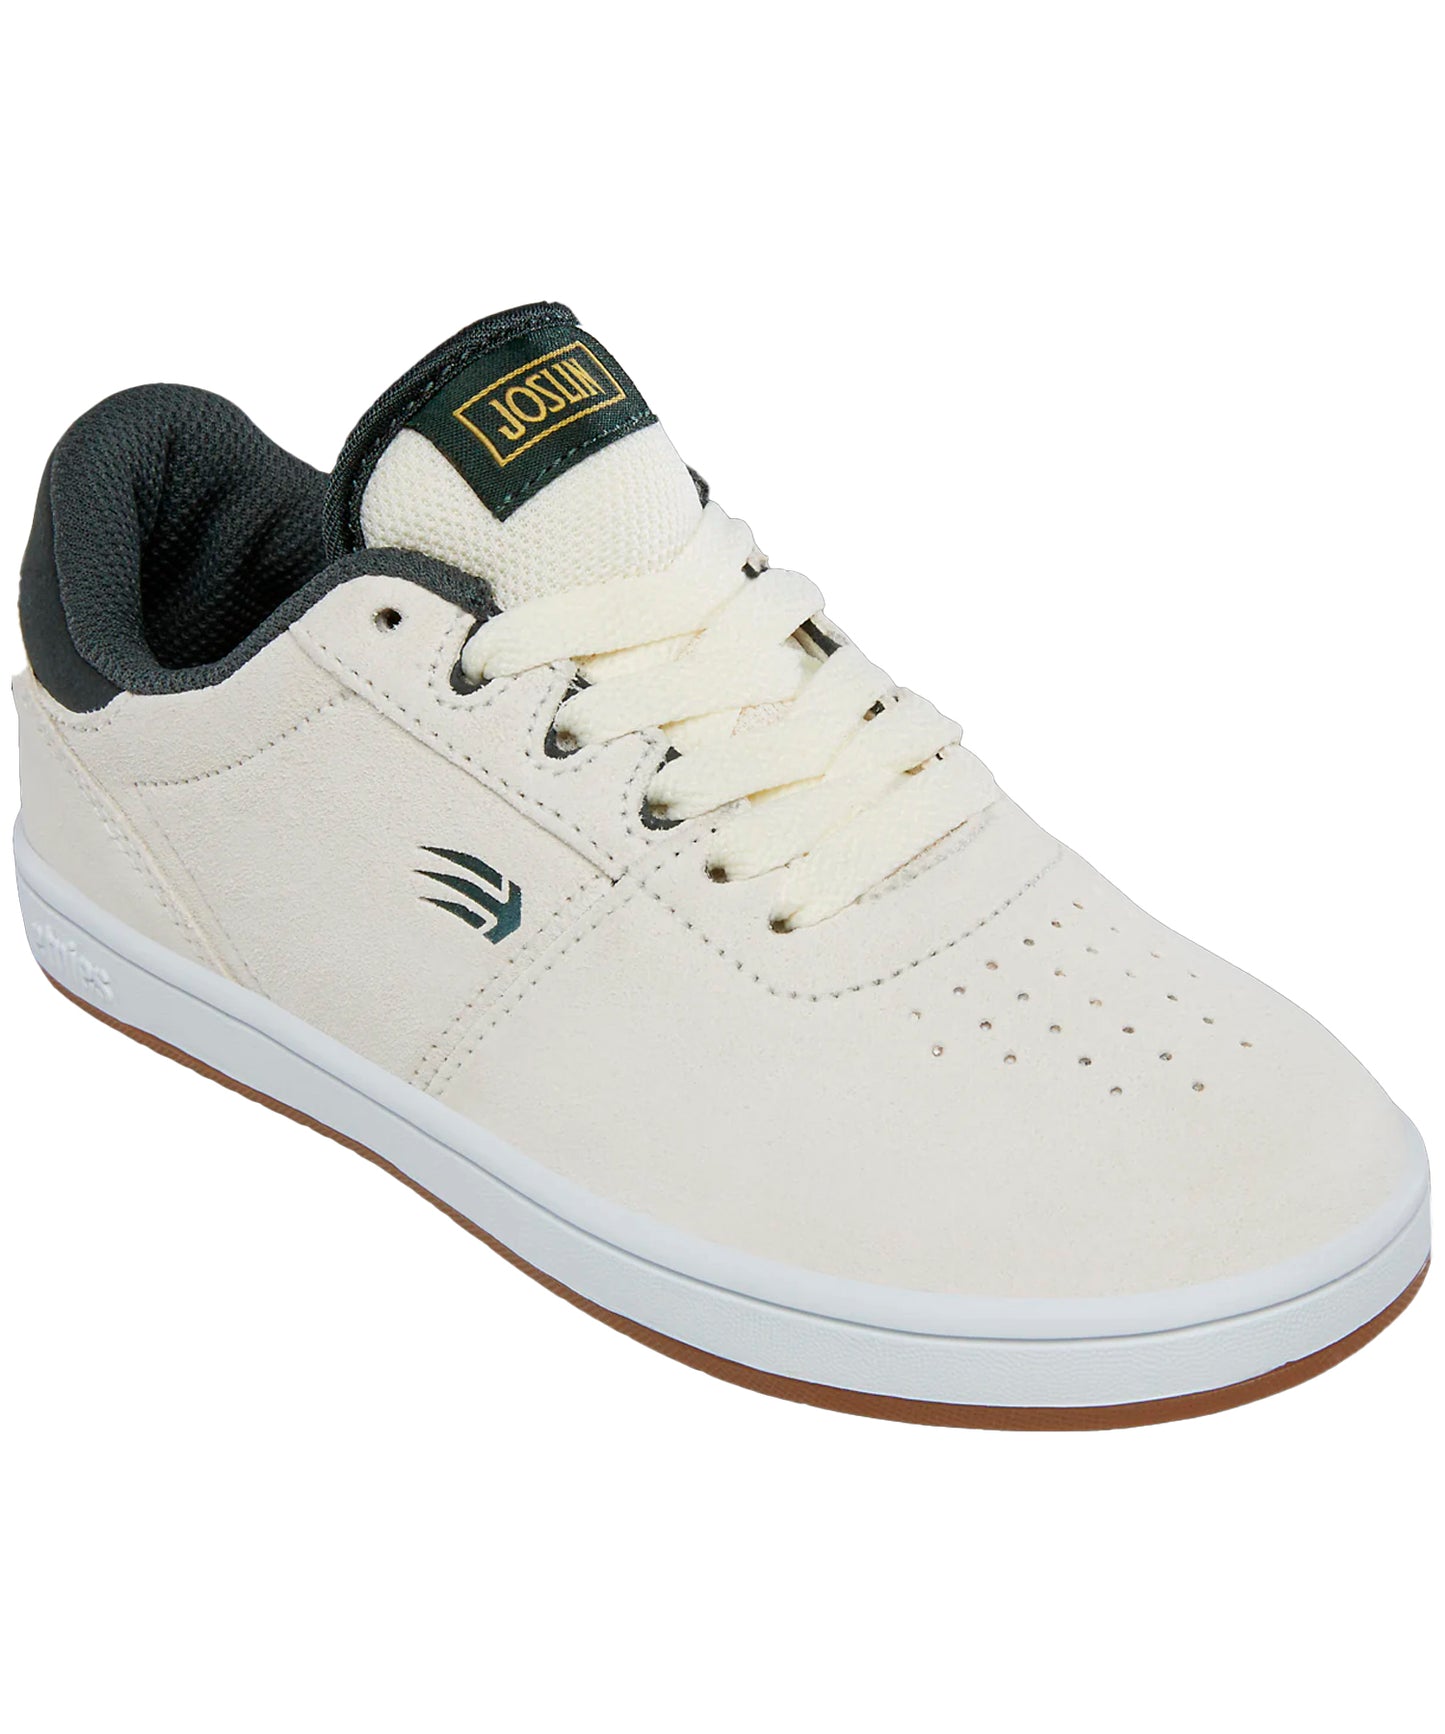 etnies-zapatillas-joslin-kids-color-blanco-suela-eva-ideal-para-skateboard-ante-sintético.